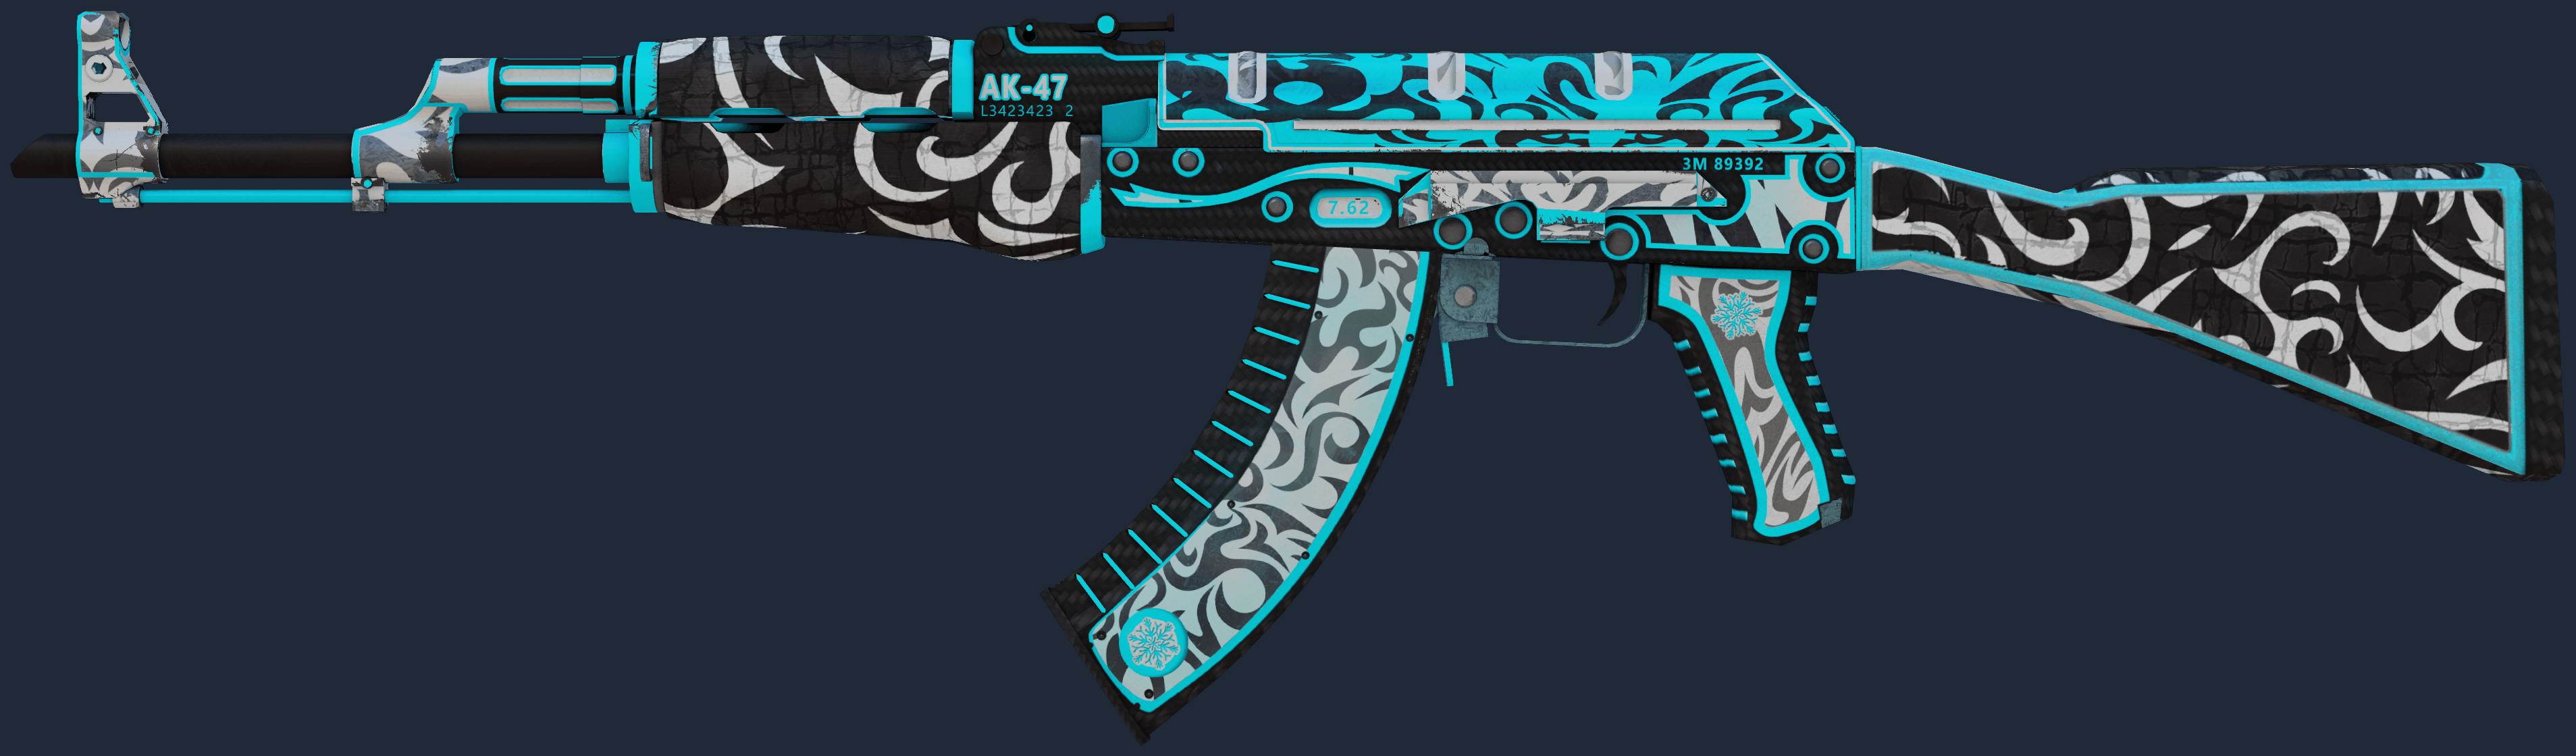 AK-47 | Frontside Misty Screenshot